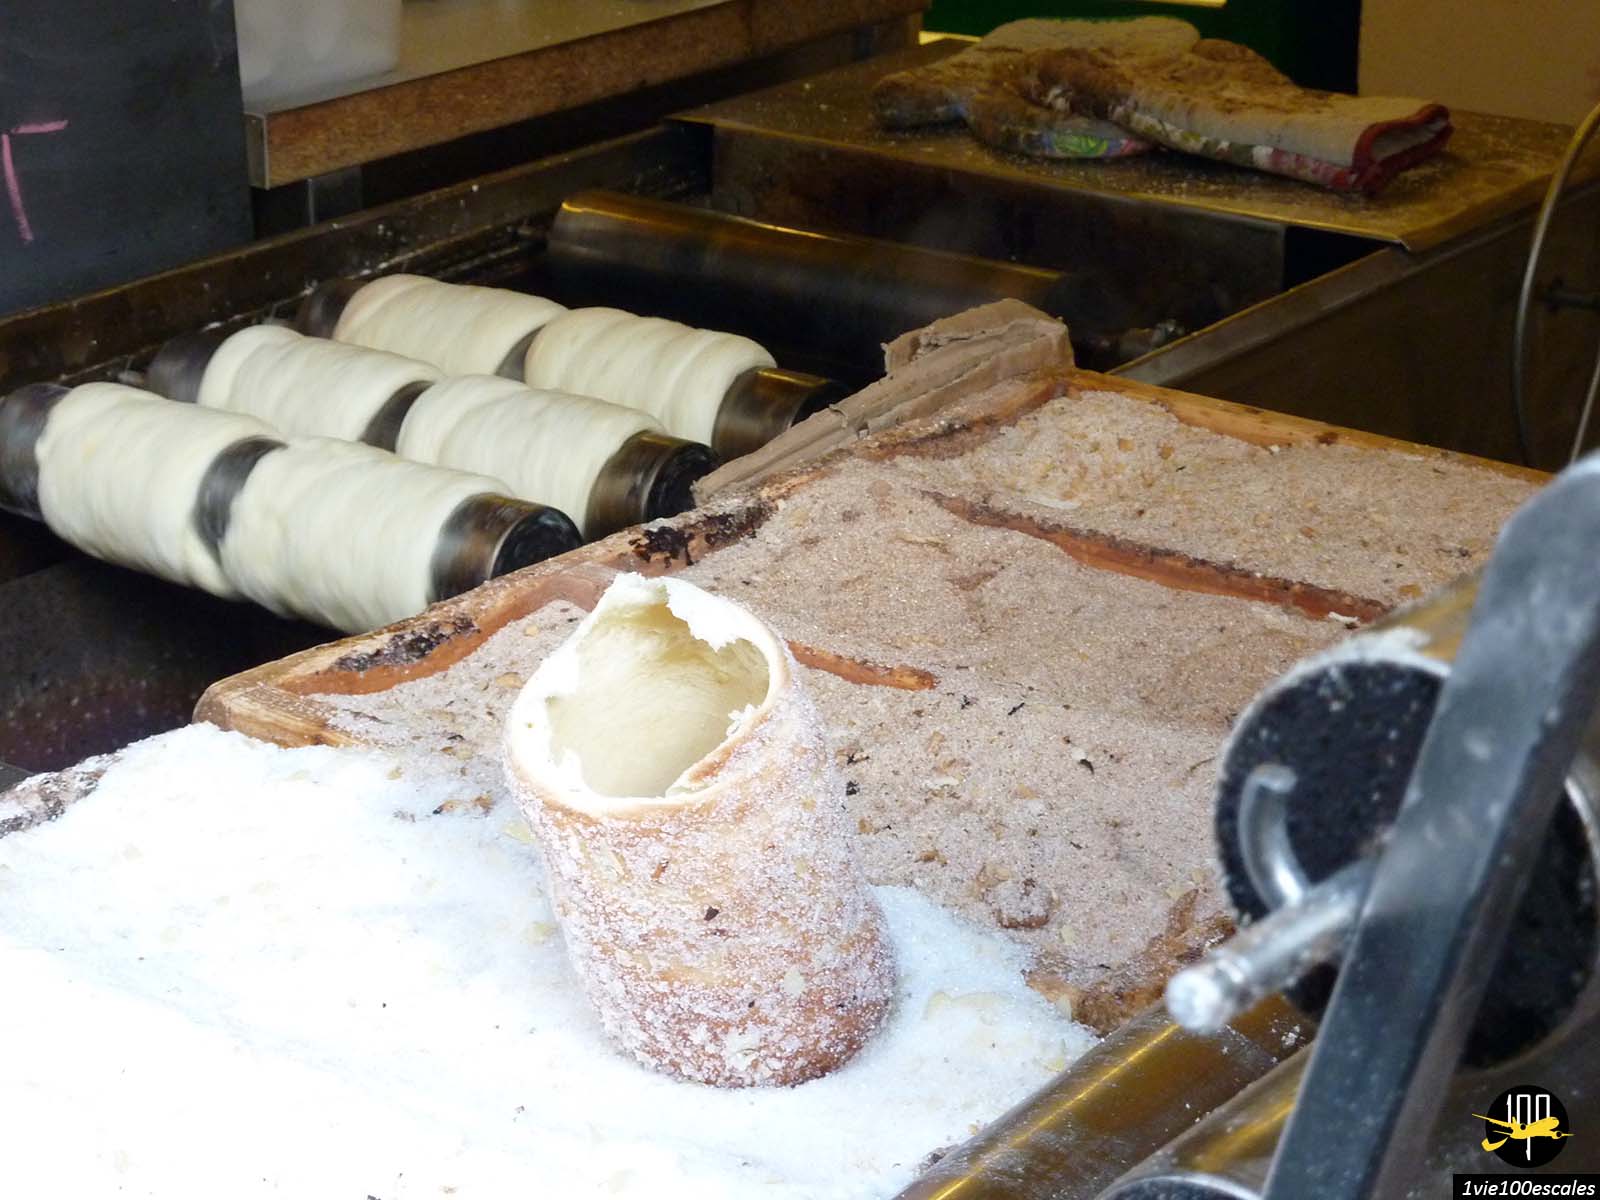 Le trdelník est un type de gâteau à la broche, qui est préparé avec de la pâte qui est enroulée autour d’un bâton, avant d’être cuit sur un feu ouvert. Le gâteau de cheminée est surmonté d’un mélange de sucre et de noix, ou de sucre à la cannelle